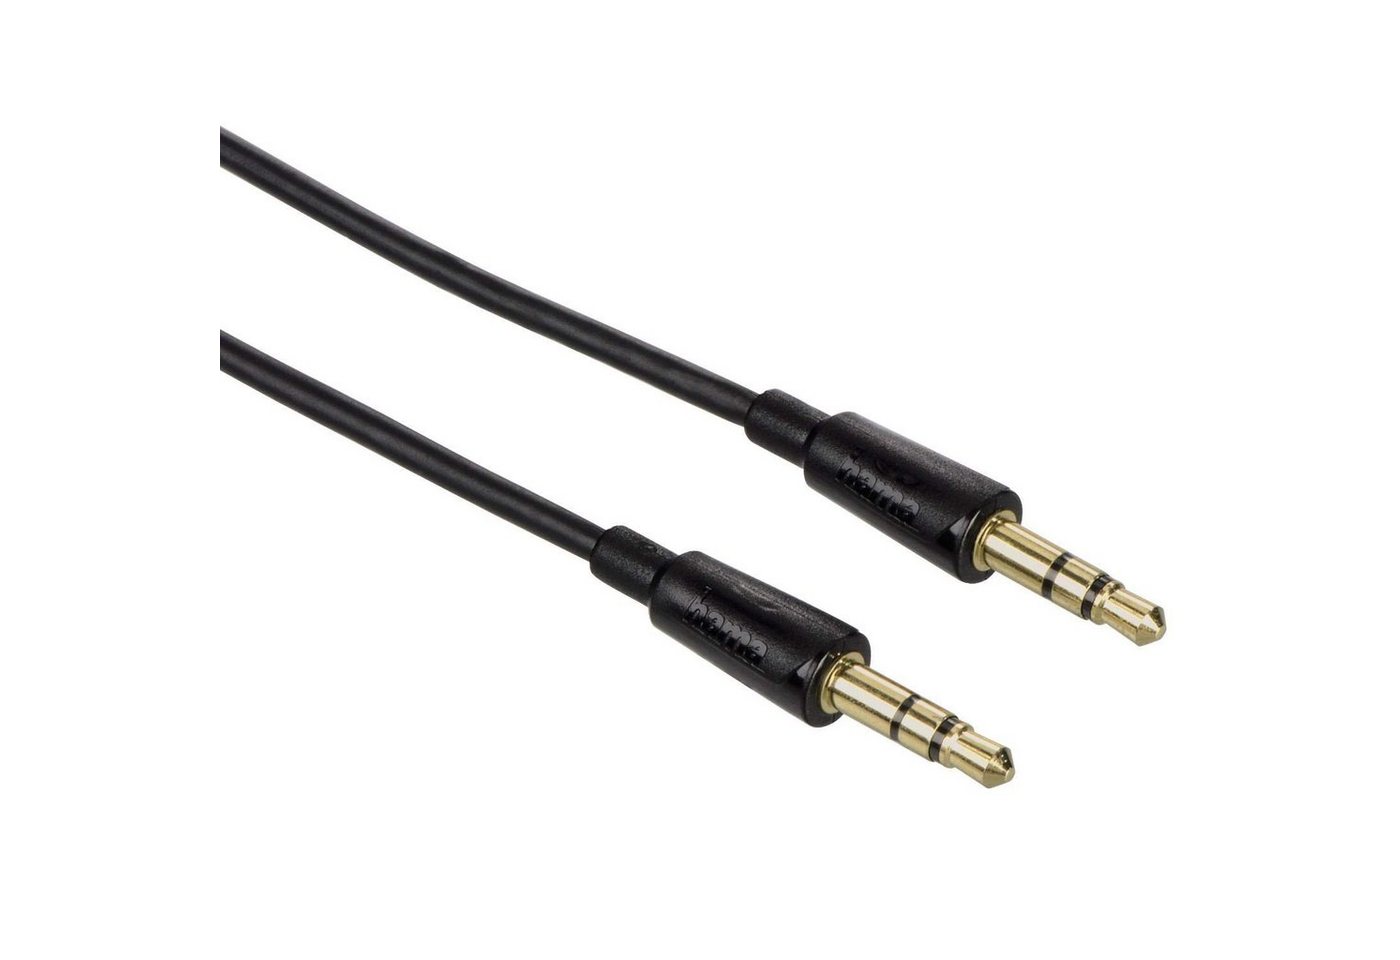 Hama Slim AUX Kabel 3,5mm Klinke-Kabel 1,5m Schwarz Audio-Kabel, 3,5-mm-Klinke, 3,5mm Klinke (150 cm), dünnes Klinken-Kabel Audio-Adapter für Handy Tablet PC MP4- MP3-Player von Hama